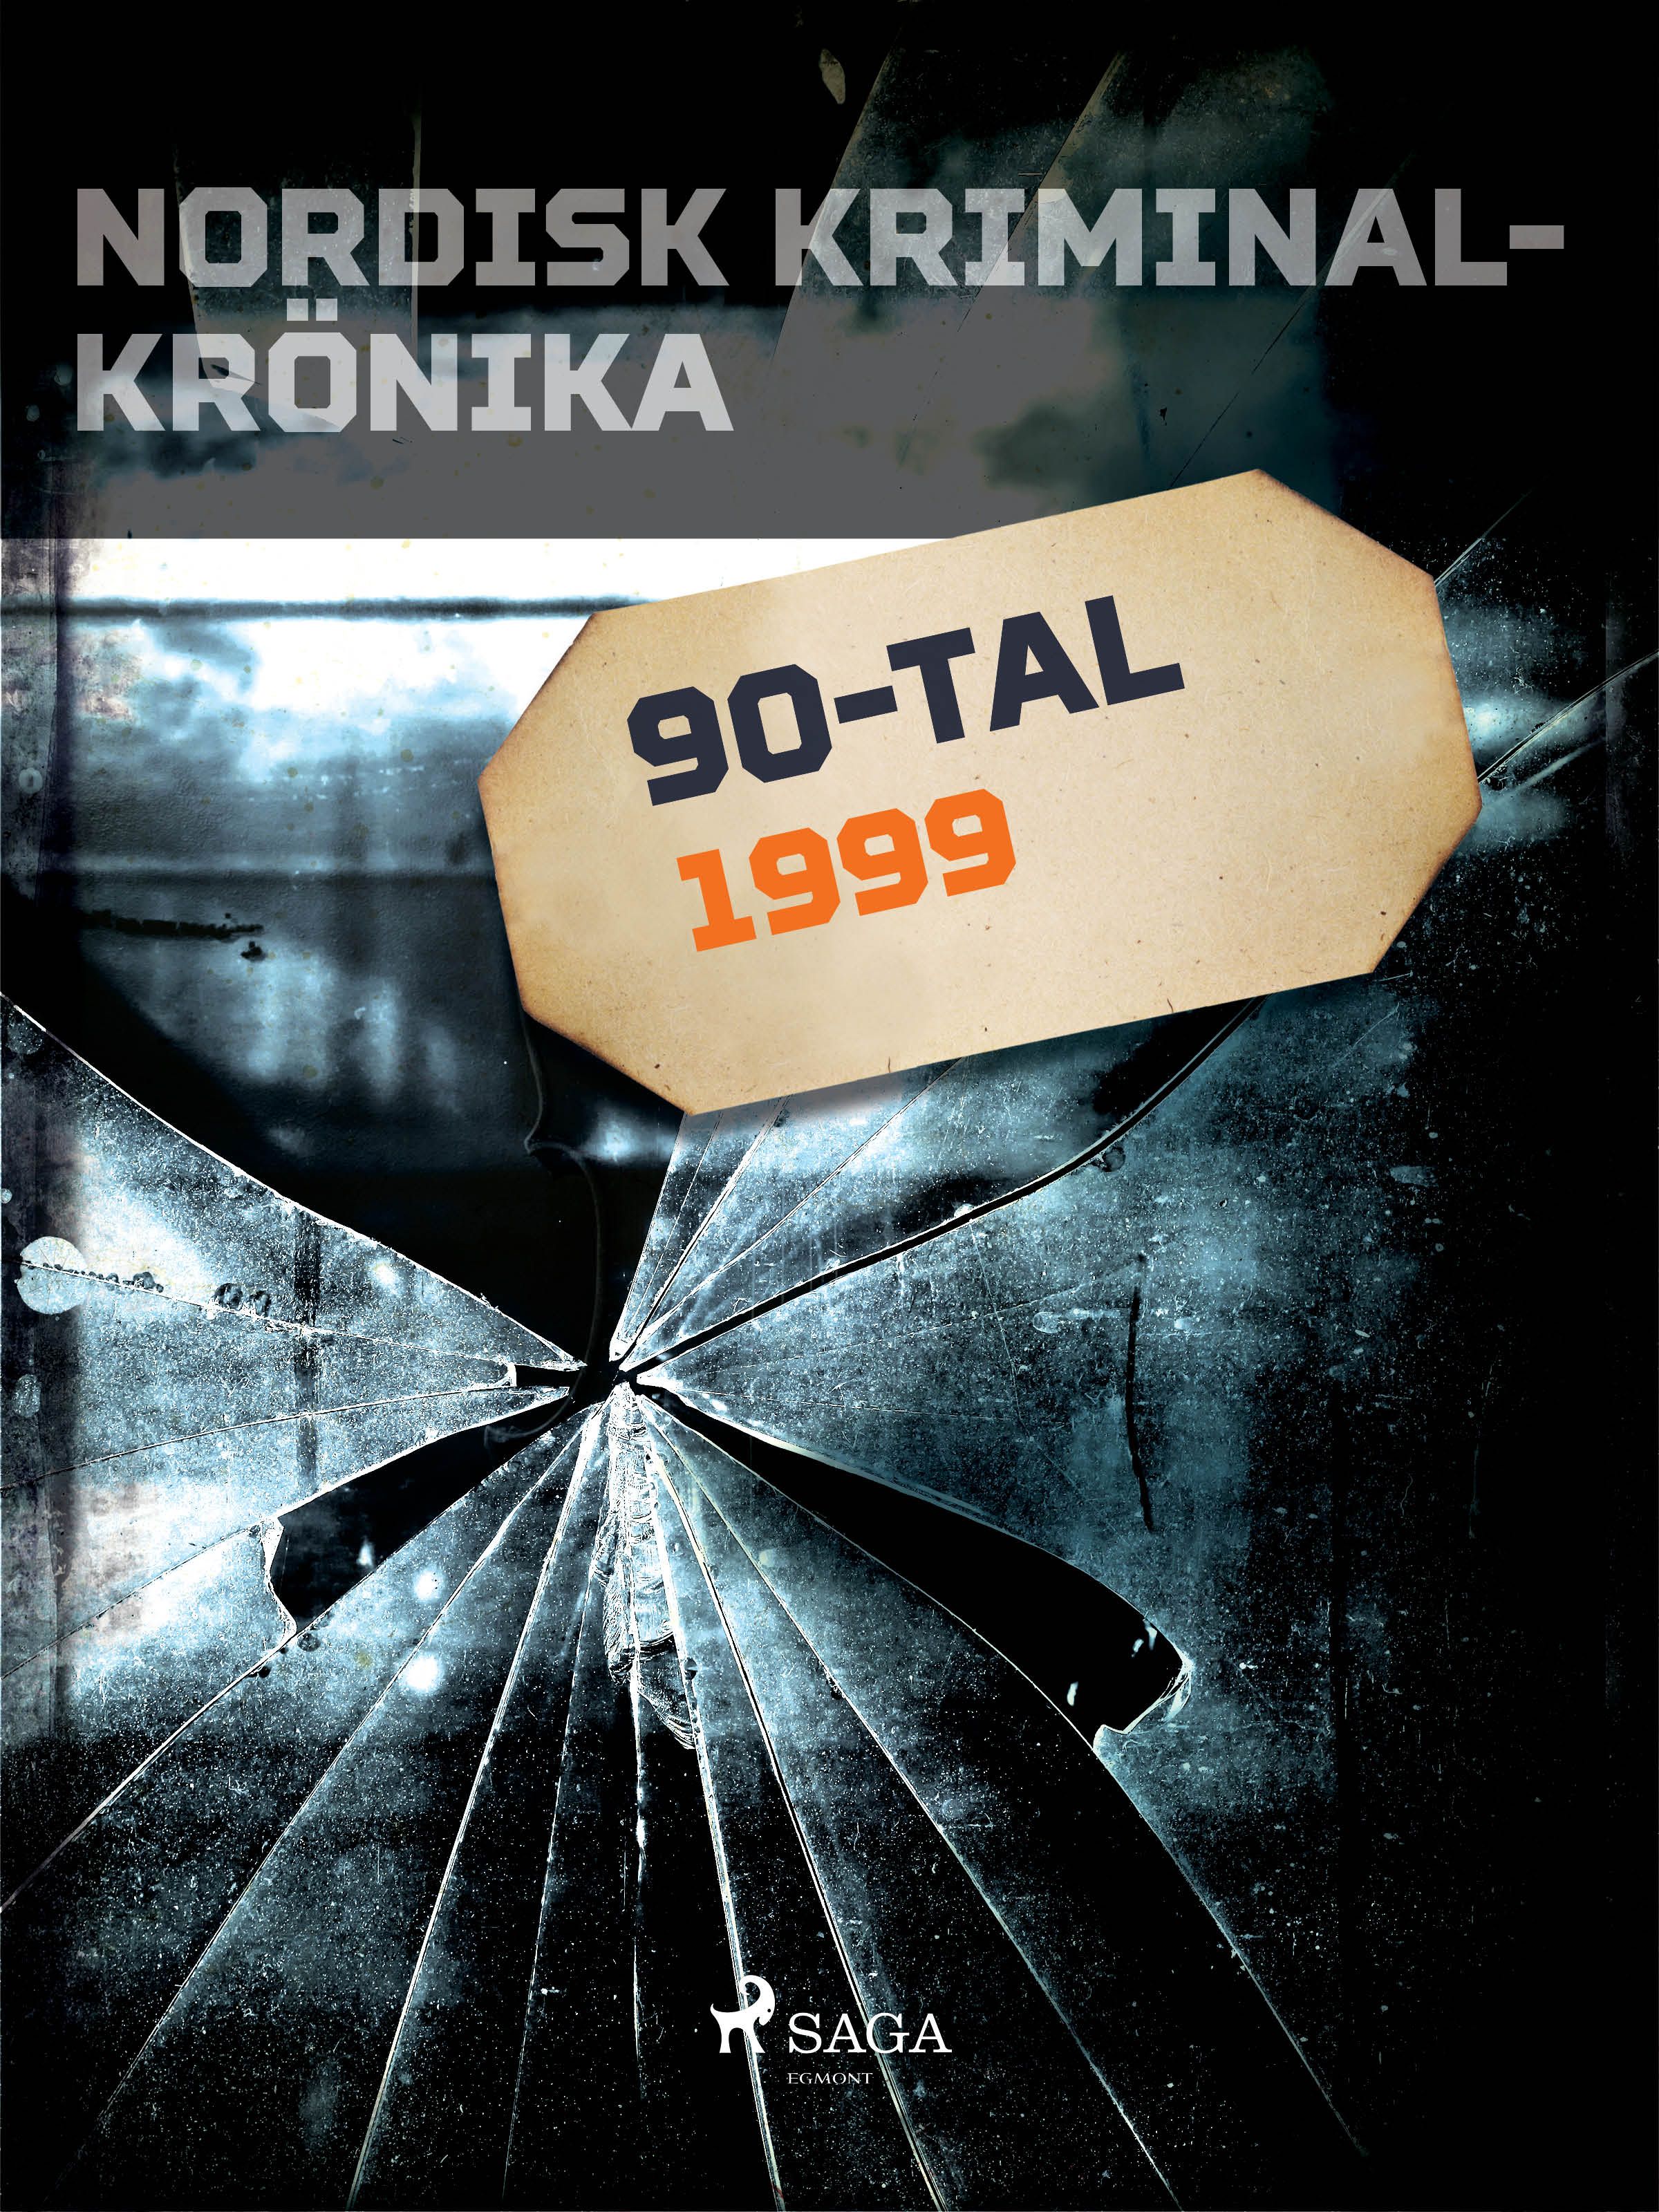 Nordisk kriminalkrönika 1999, e-bok av Diverse